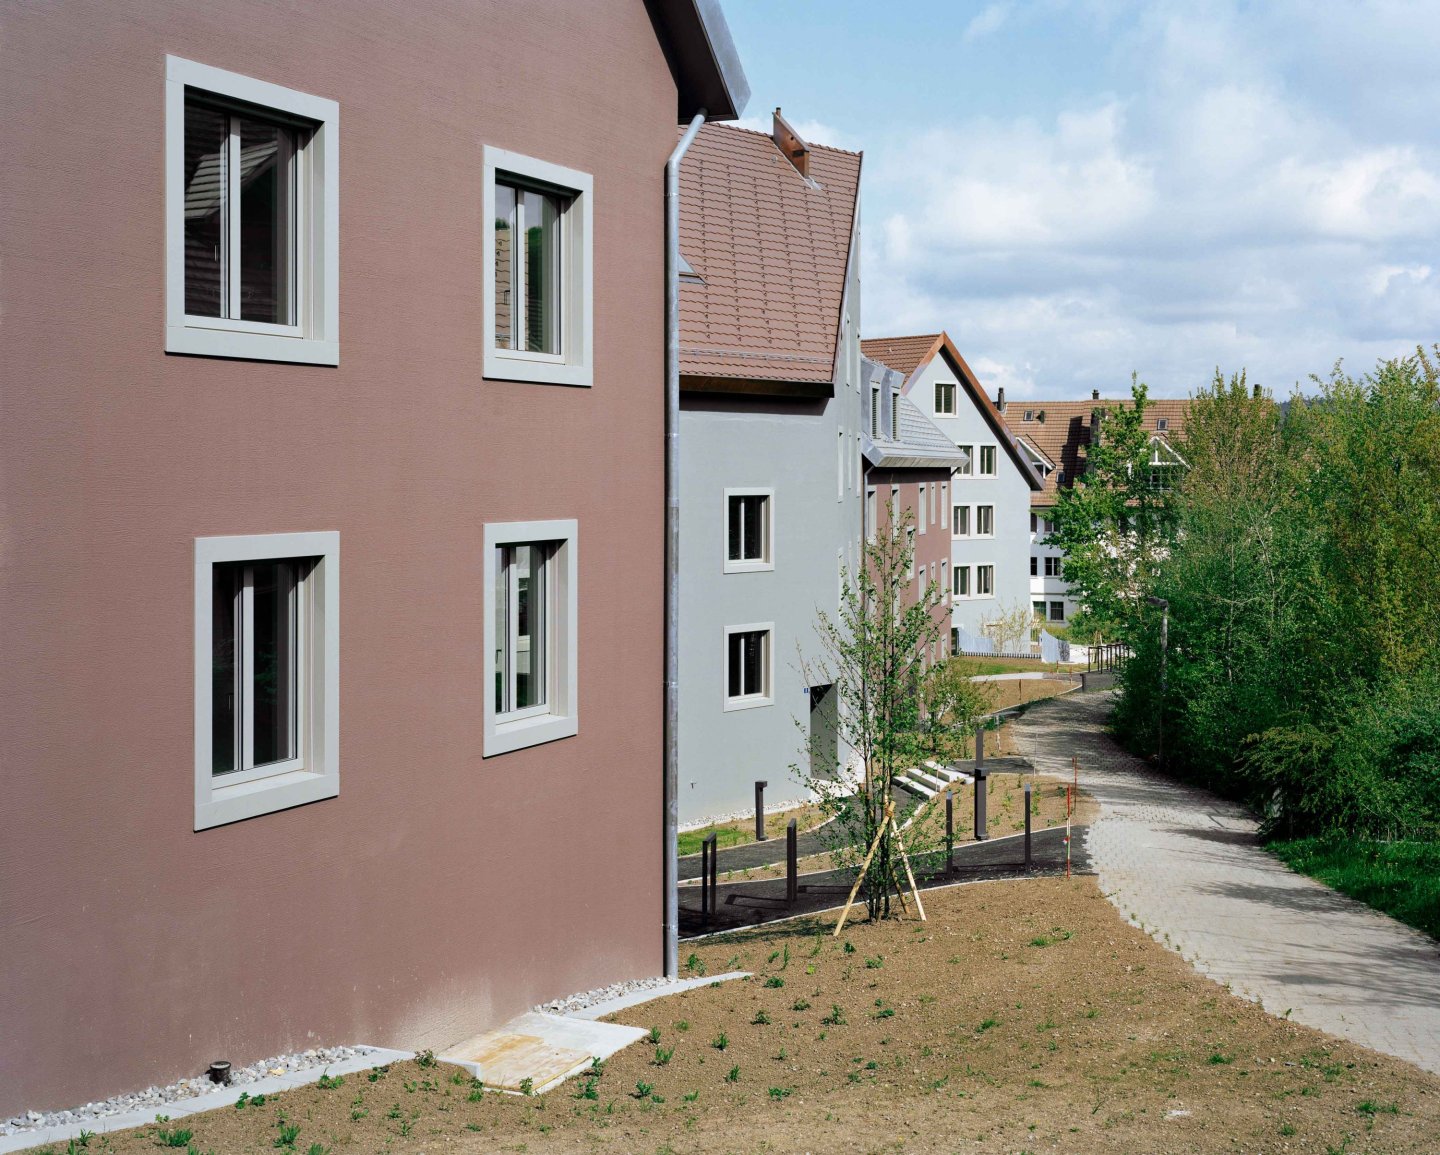 Blättler Dafflon - Wohnsiedlung Hofwies, Bonstetten Studienauftrag 1. Preis